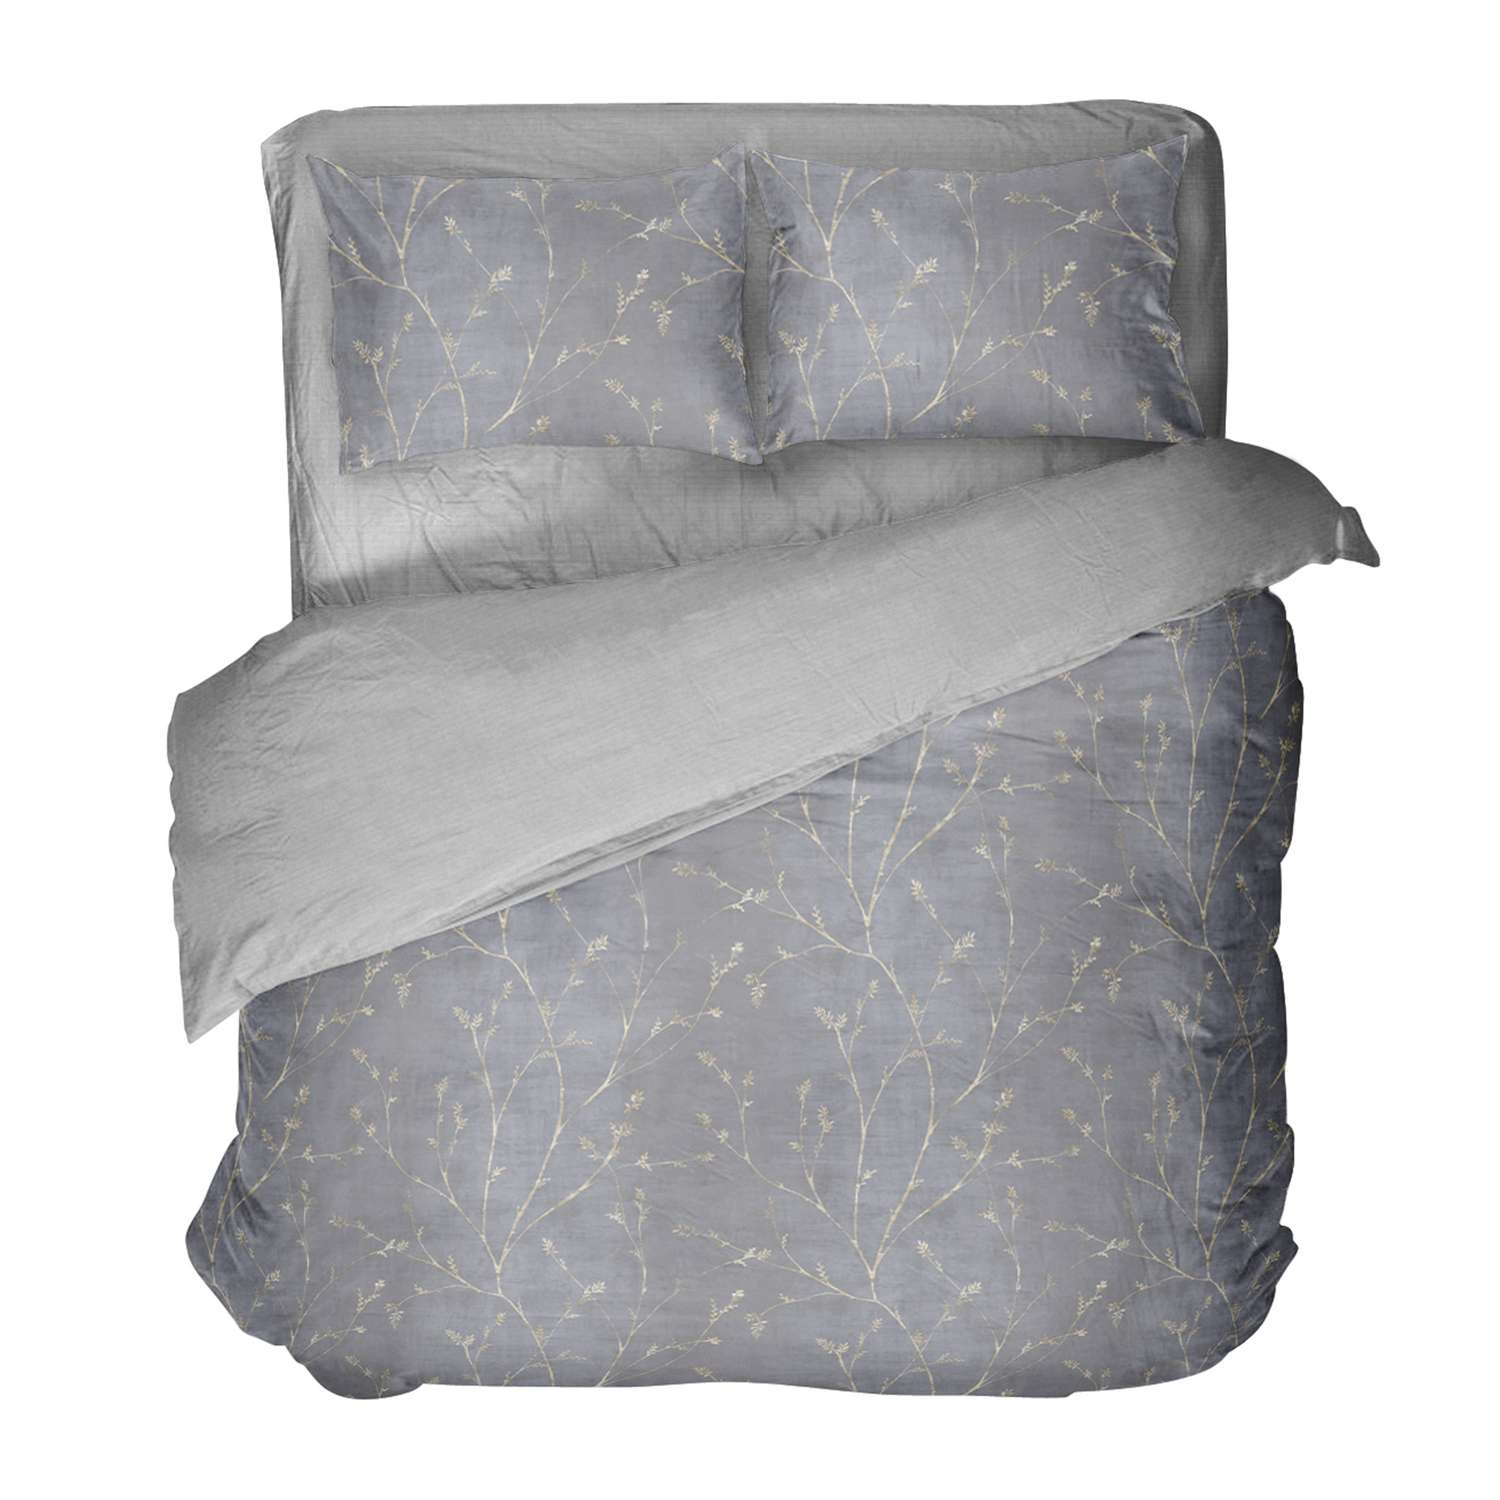 Комплект постельного белья Verossa Rame из сатина Семейный 4 наволочки - фото 1